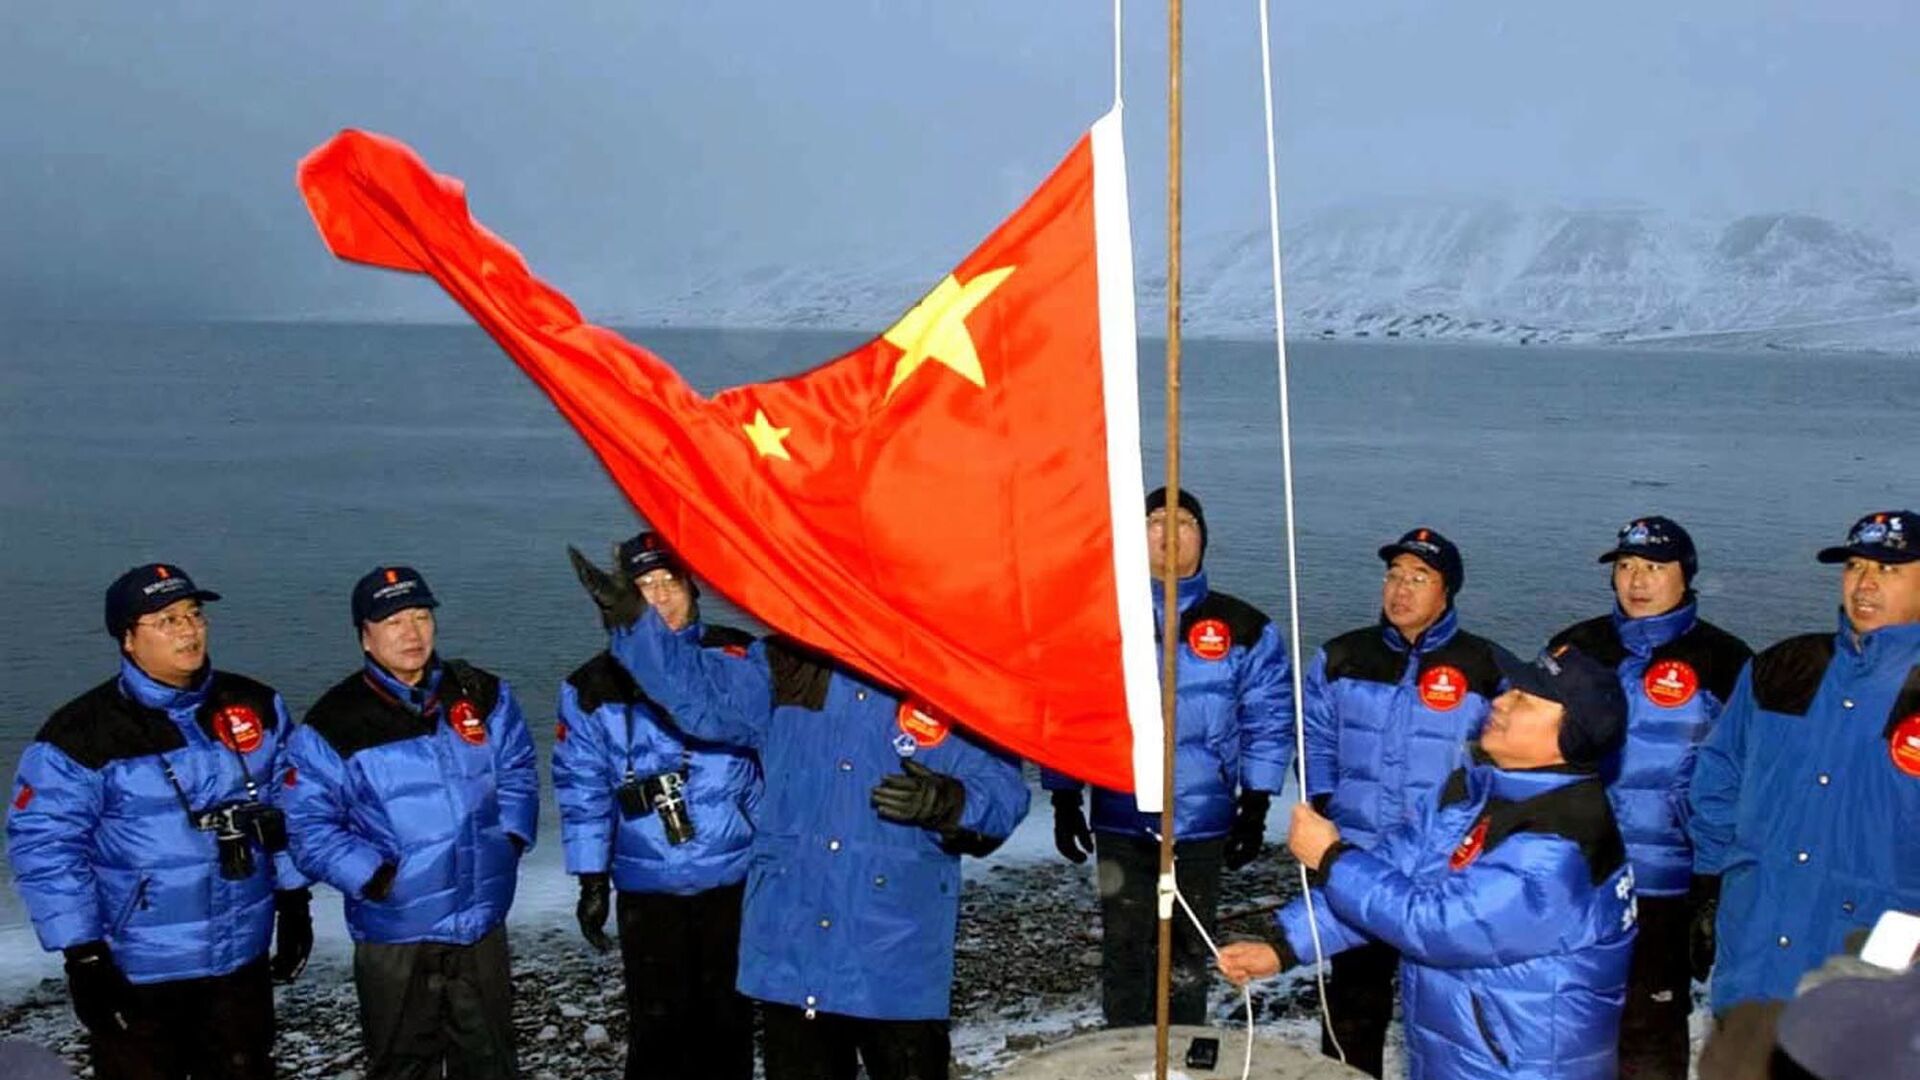 أعضاء بعثة صينية إلى القطب الشمالي يرفعون علم الصين في لونغييربين في جزيرة سبيتسبيرغن / سفالبارد، شمال النرويج، 31 أكتوبر 2001 - سبوتنيك عربي, 1920, 24.07.2021